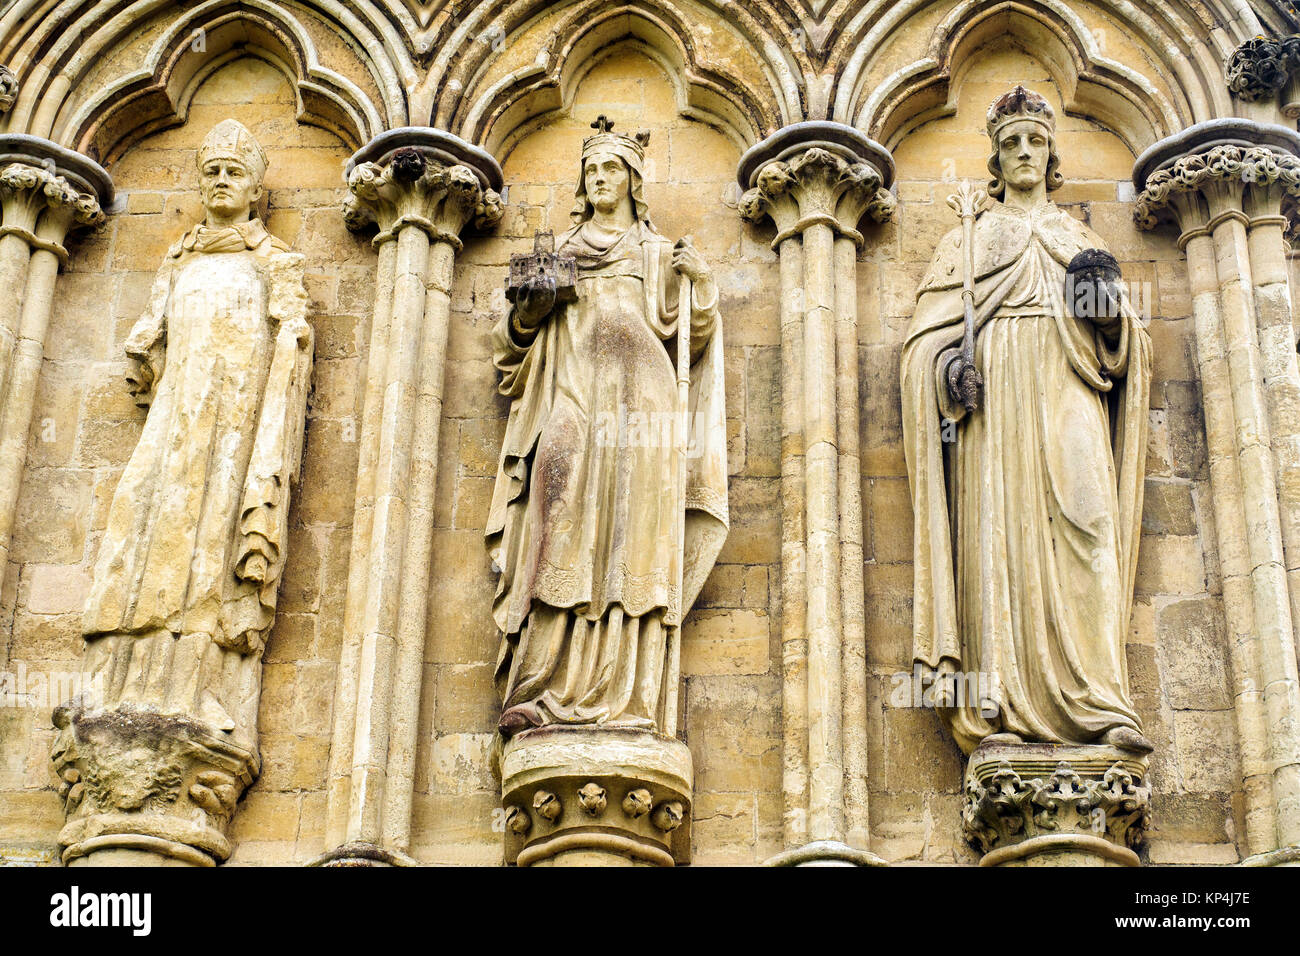 Détail de l'extérieur de la cathédrale de Salisbury ou Cathédrale de l'église de la Bienheureuse Vierge Marie - Wiltshire, Angleterre Banque D'Images